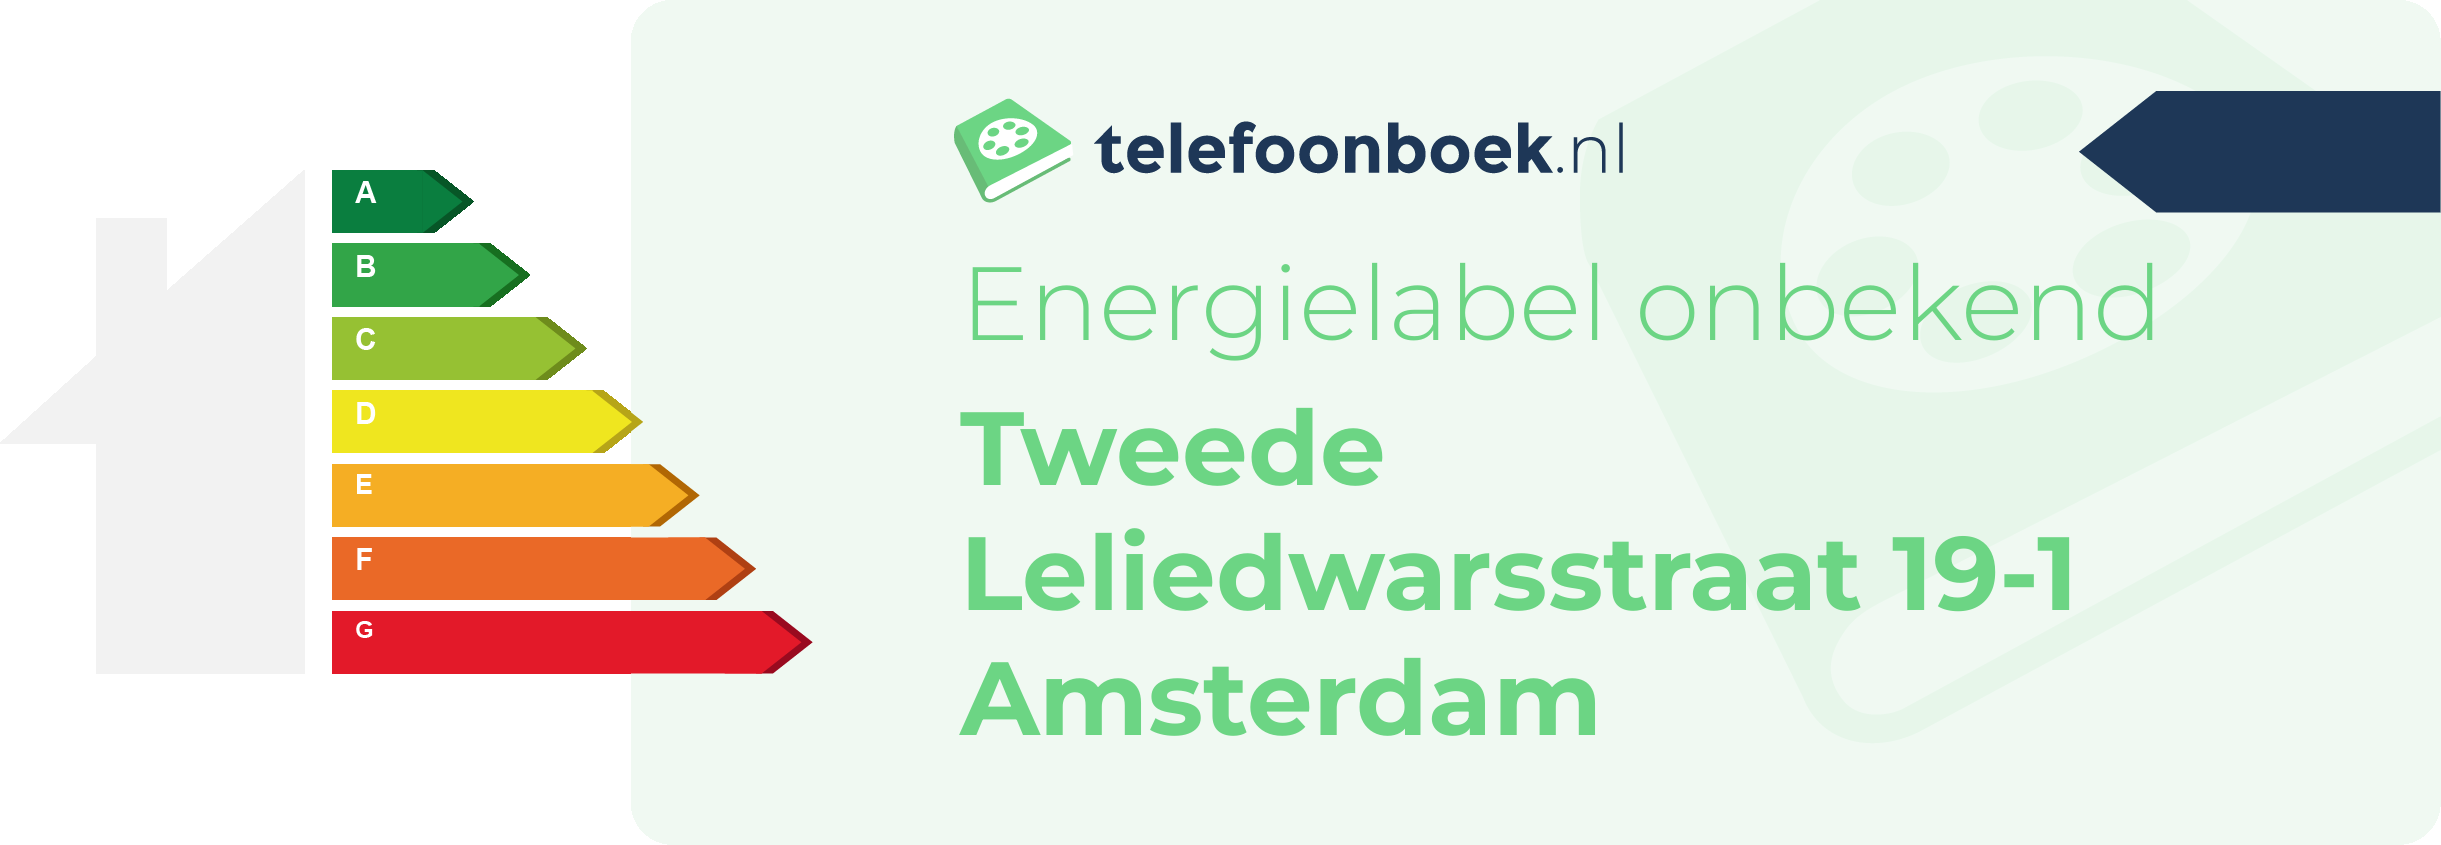 Energielabel Tweede Leliedwarsstraat 19-1 Amsterdam